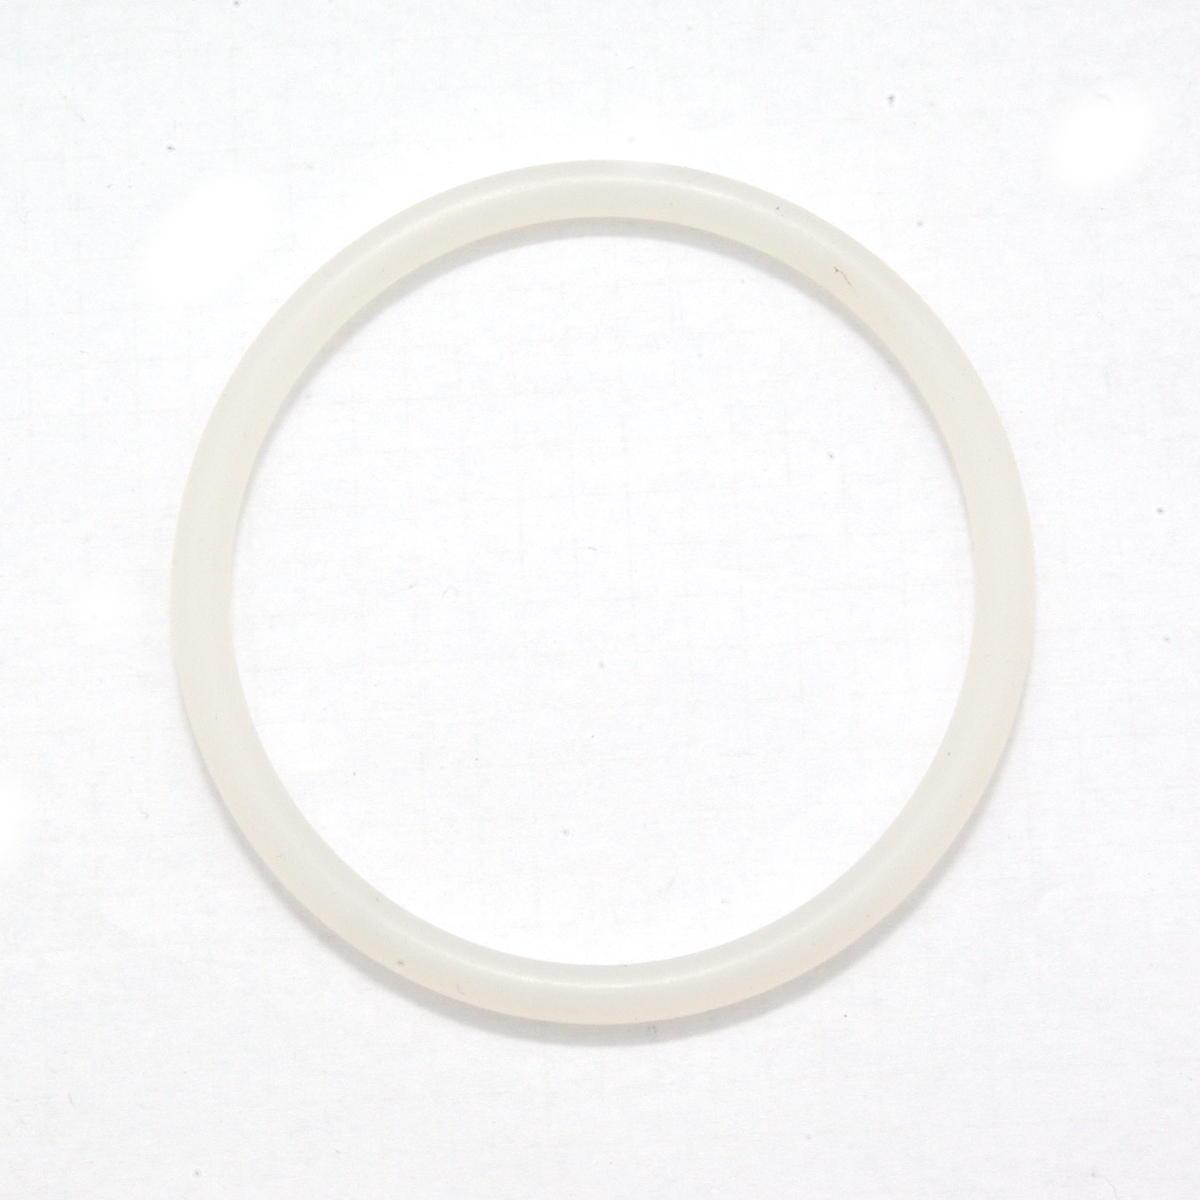 Dichtring / O-Ring 5,28 x 1,78 mm Silikon/MVQ 70 transparent